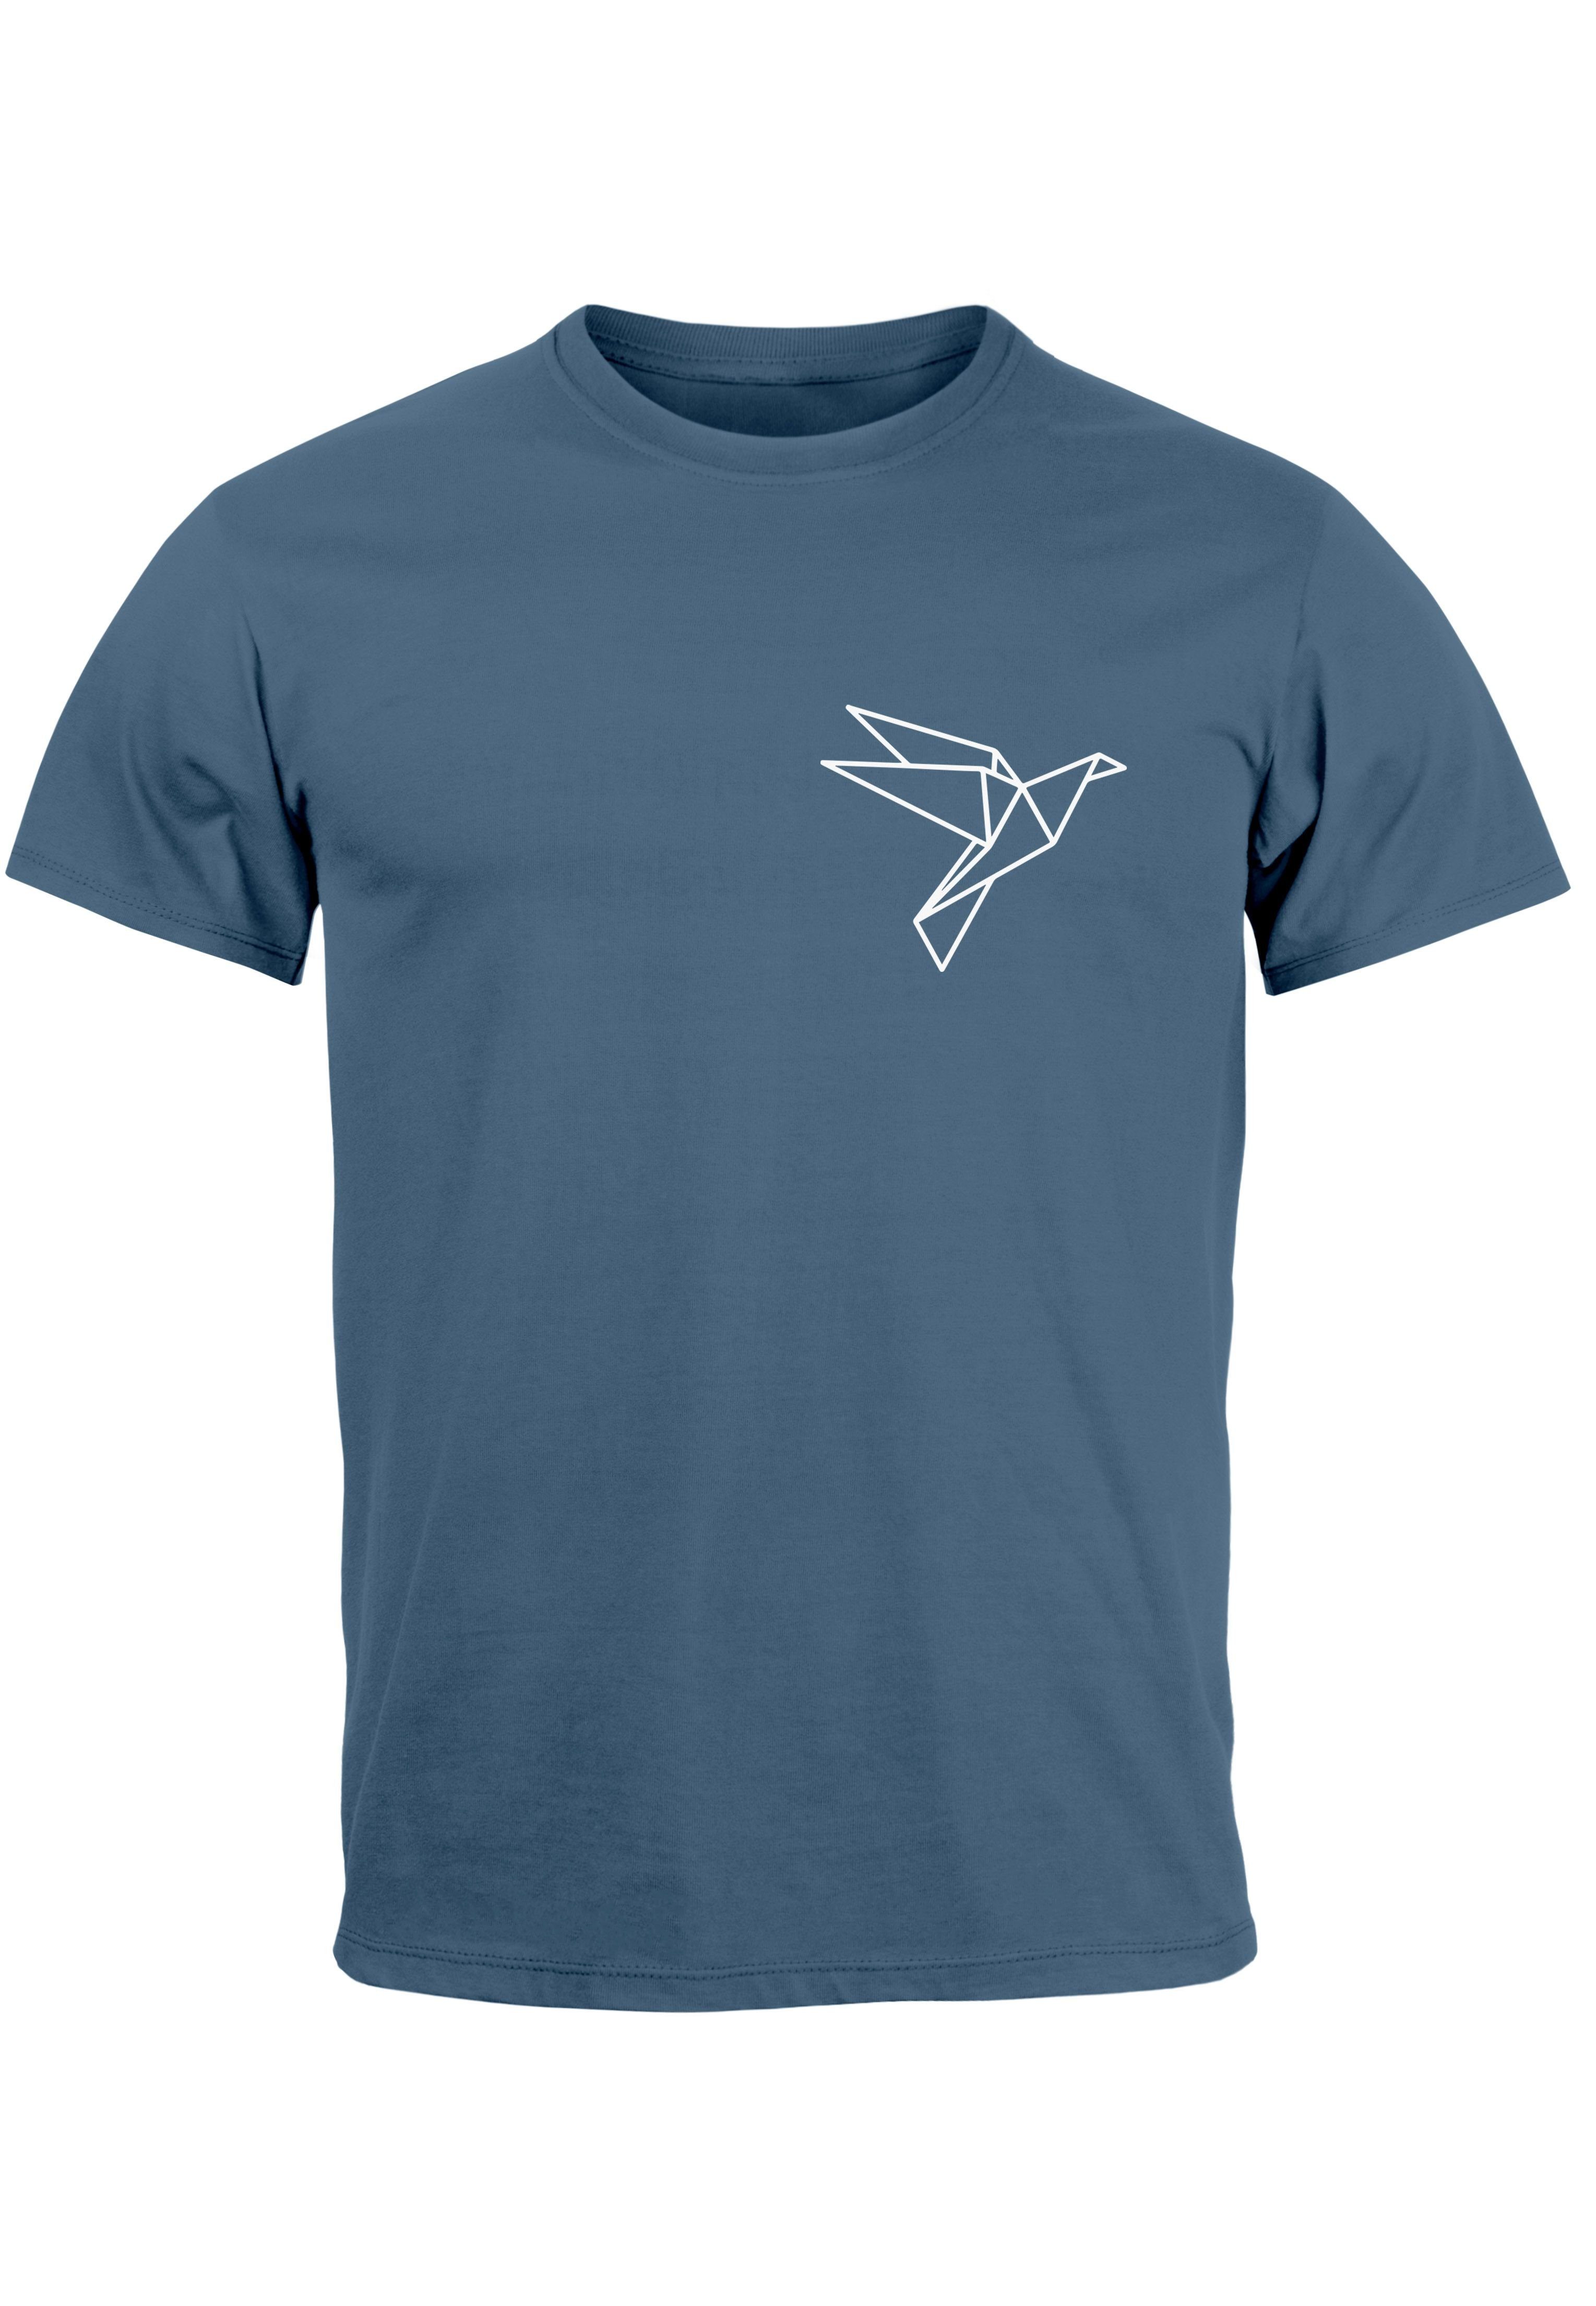 Neverless Vogel blue Herren T-Shirt Aufdruck Print-Shirt denim mit Brustprint Polygon Origami Print Logo Fashion